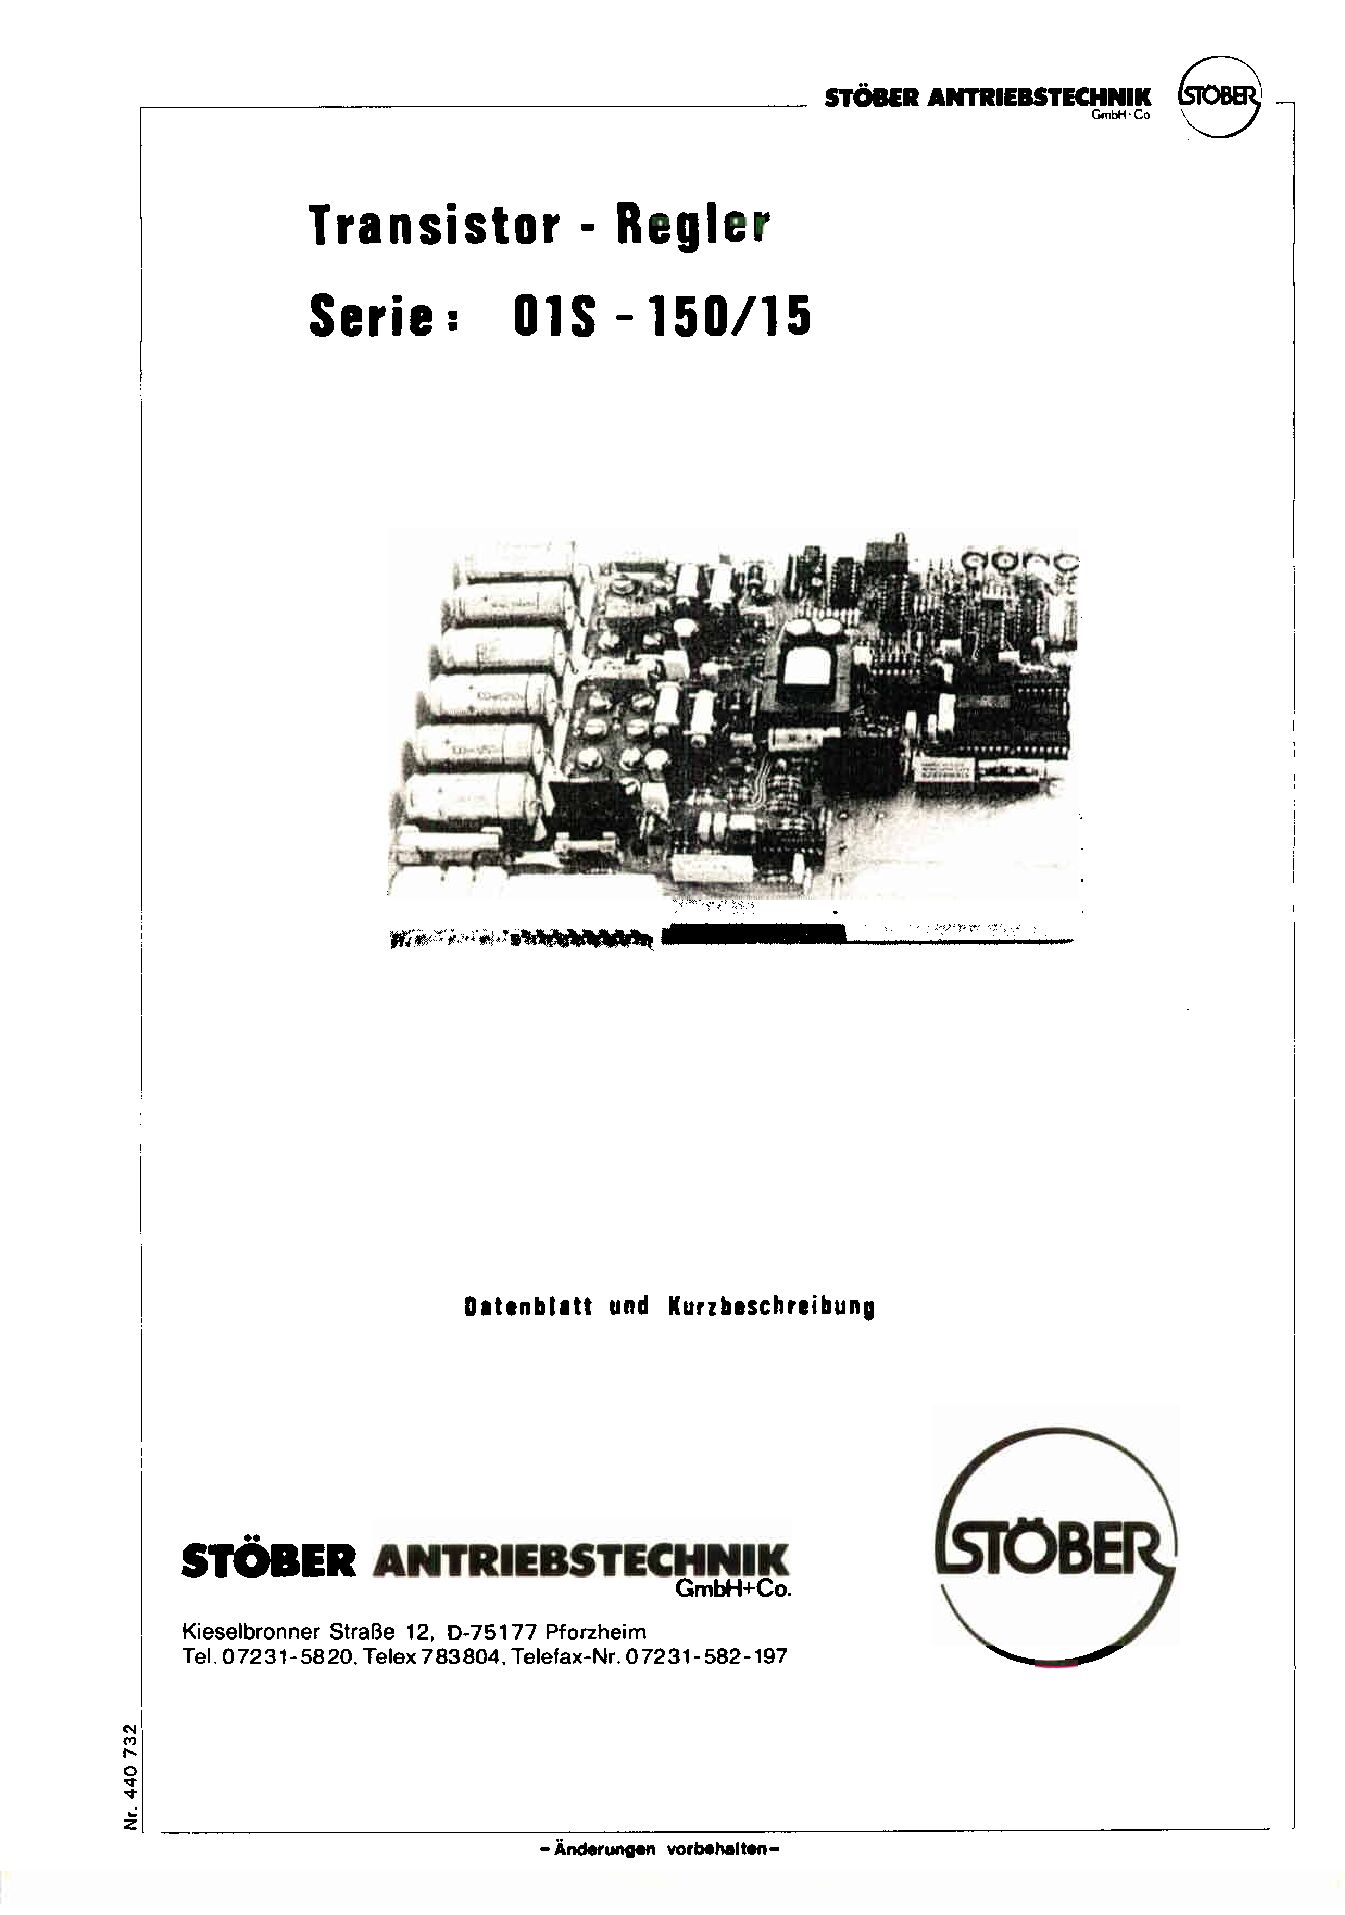 Dokumentation Transistor-Regler 01S – 150/15